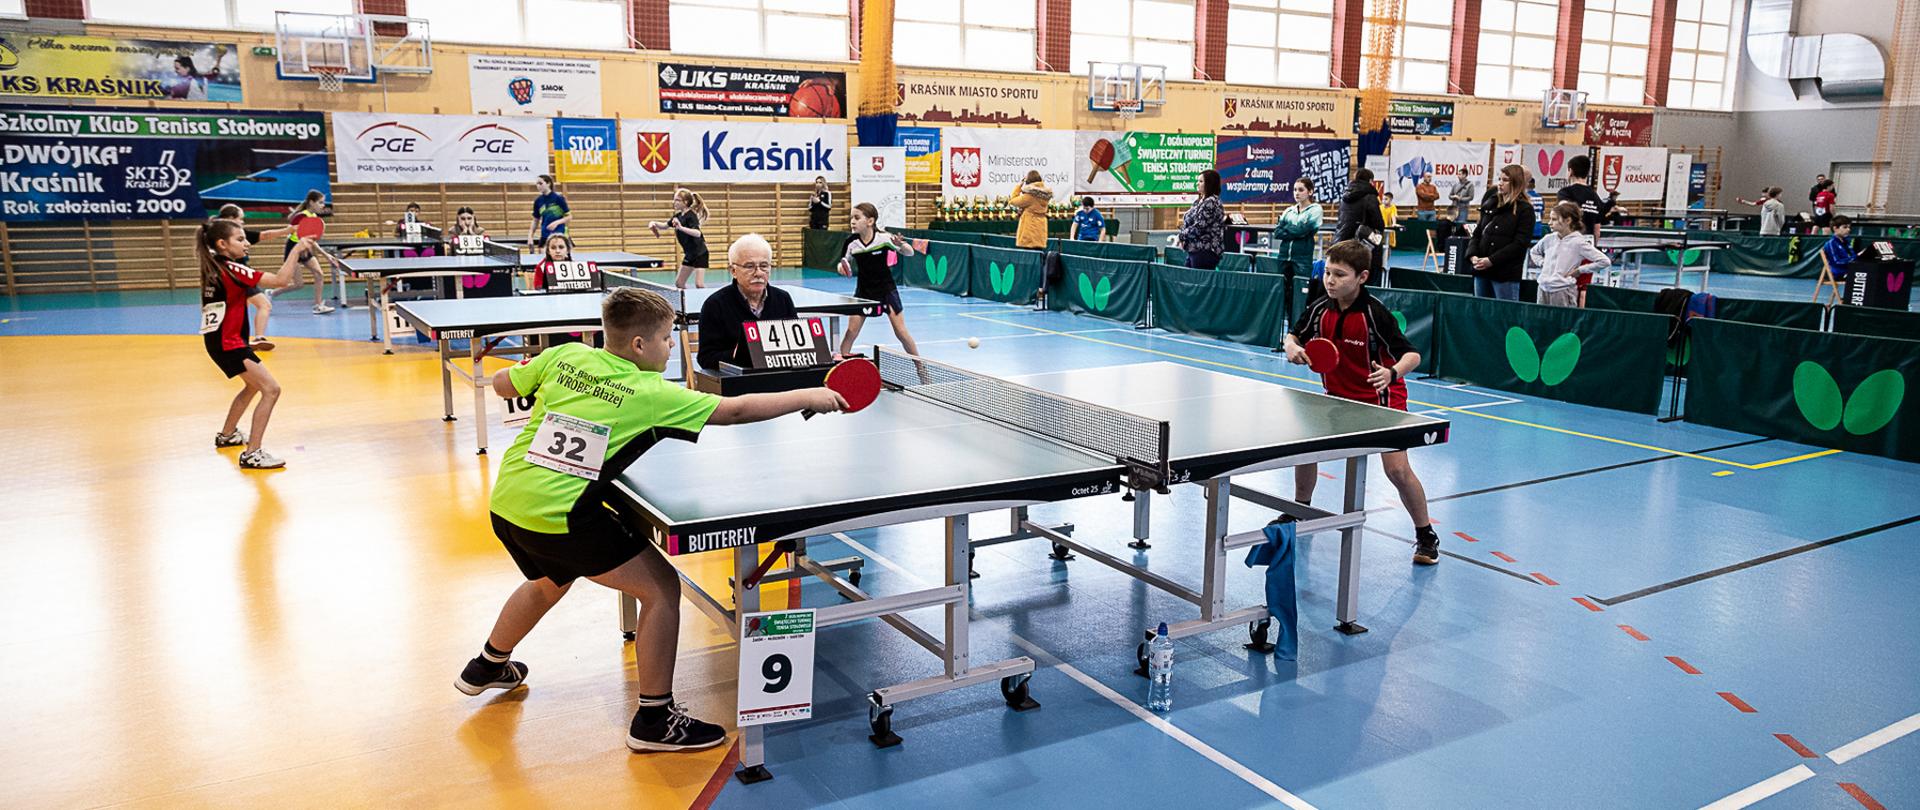 Zawodnicy podczas rozgrywanych meczy na stołach rozstawionych na hali sportowej